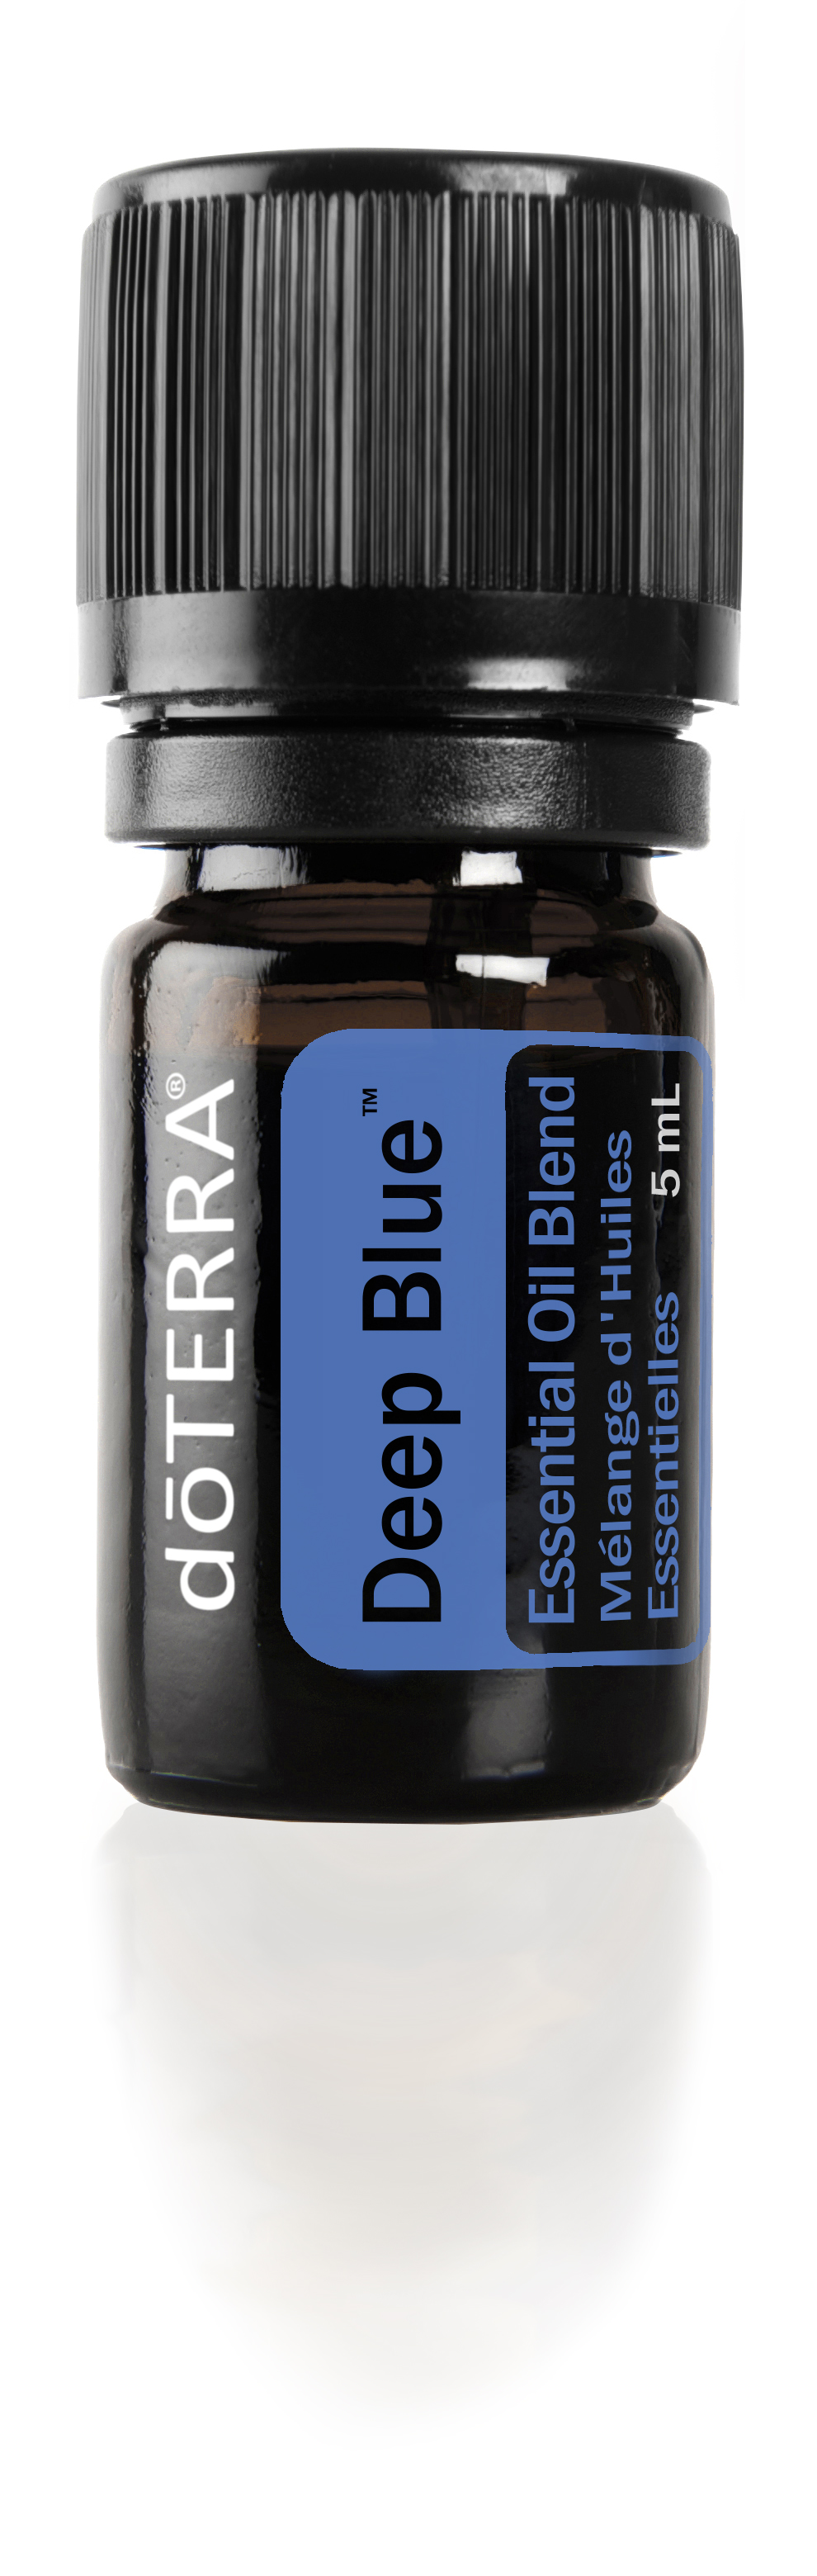 Deep Blue Oil Blend | dōTERRA Essential Oils